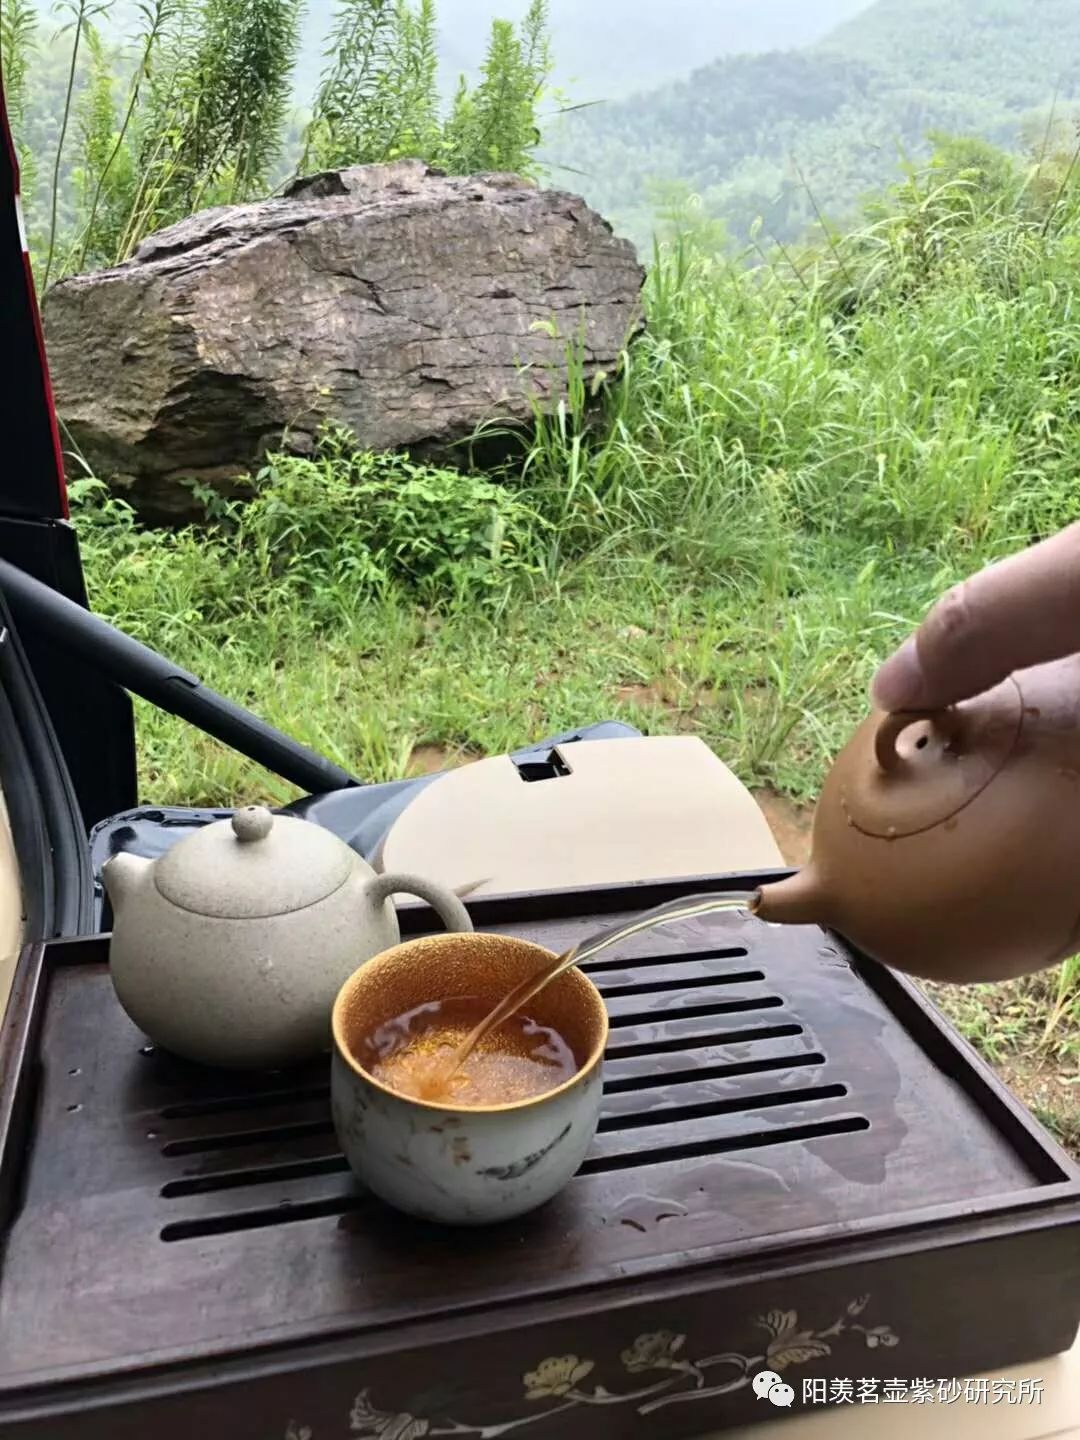 如何对待茶、用心泡好一壶茶？